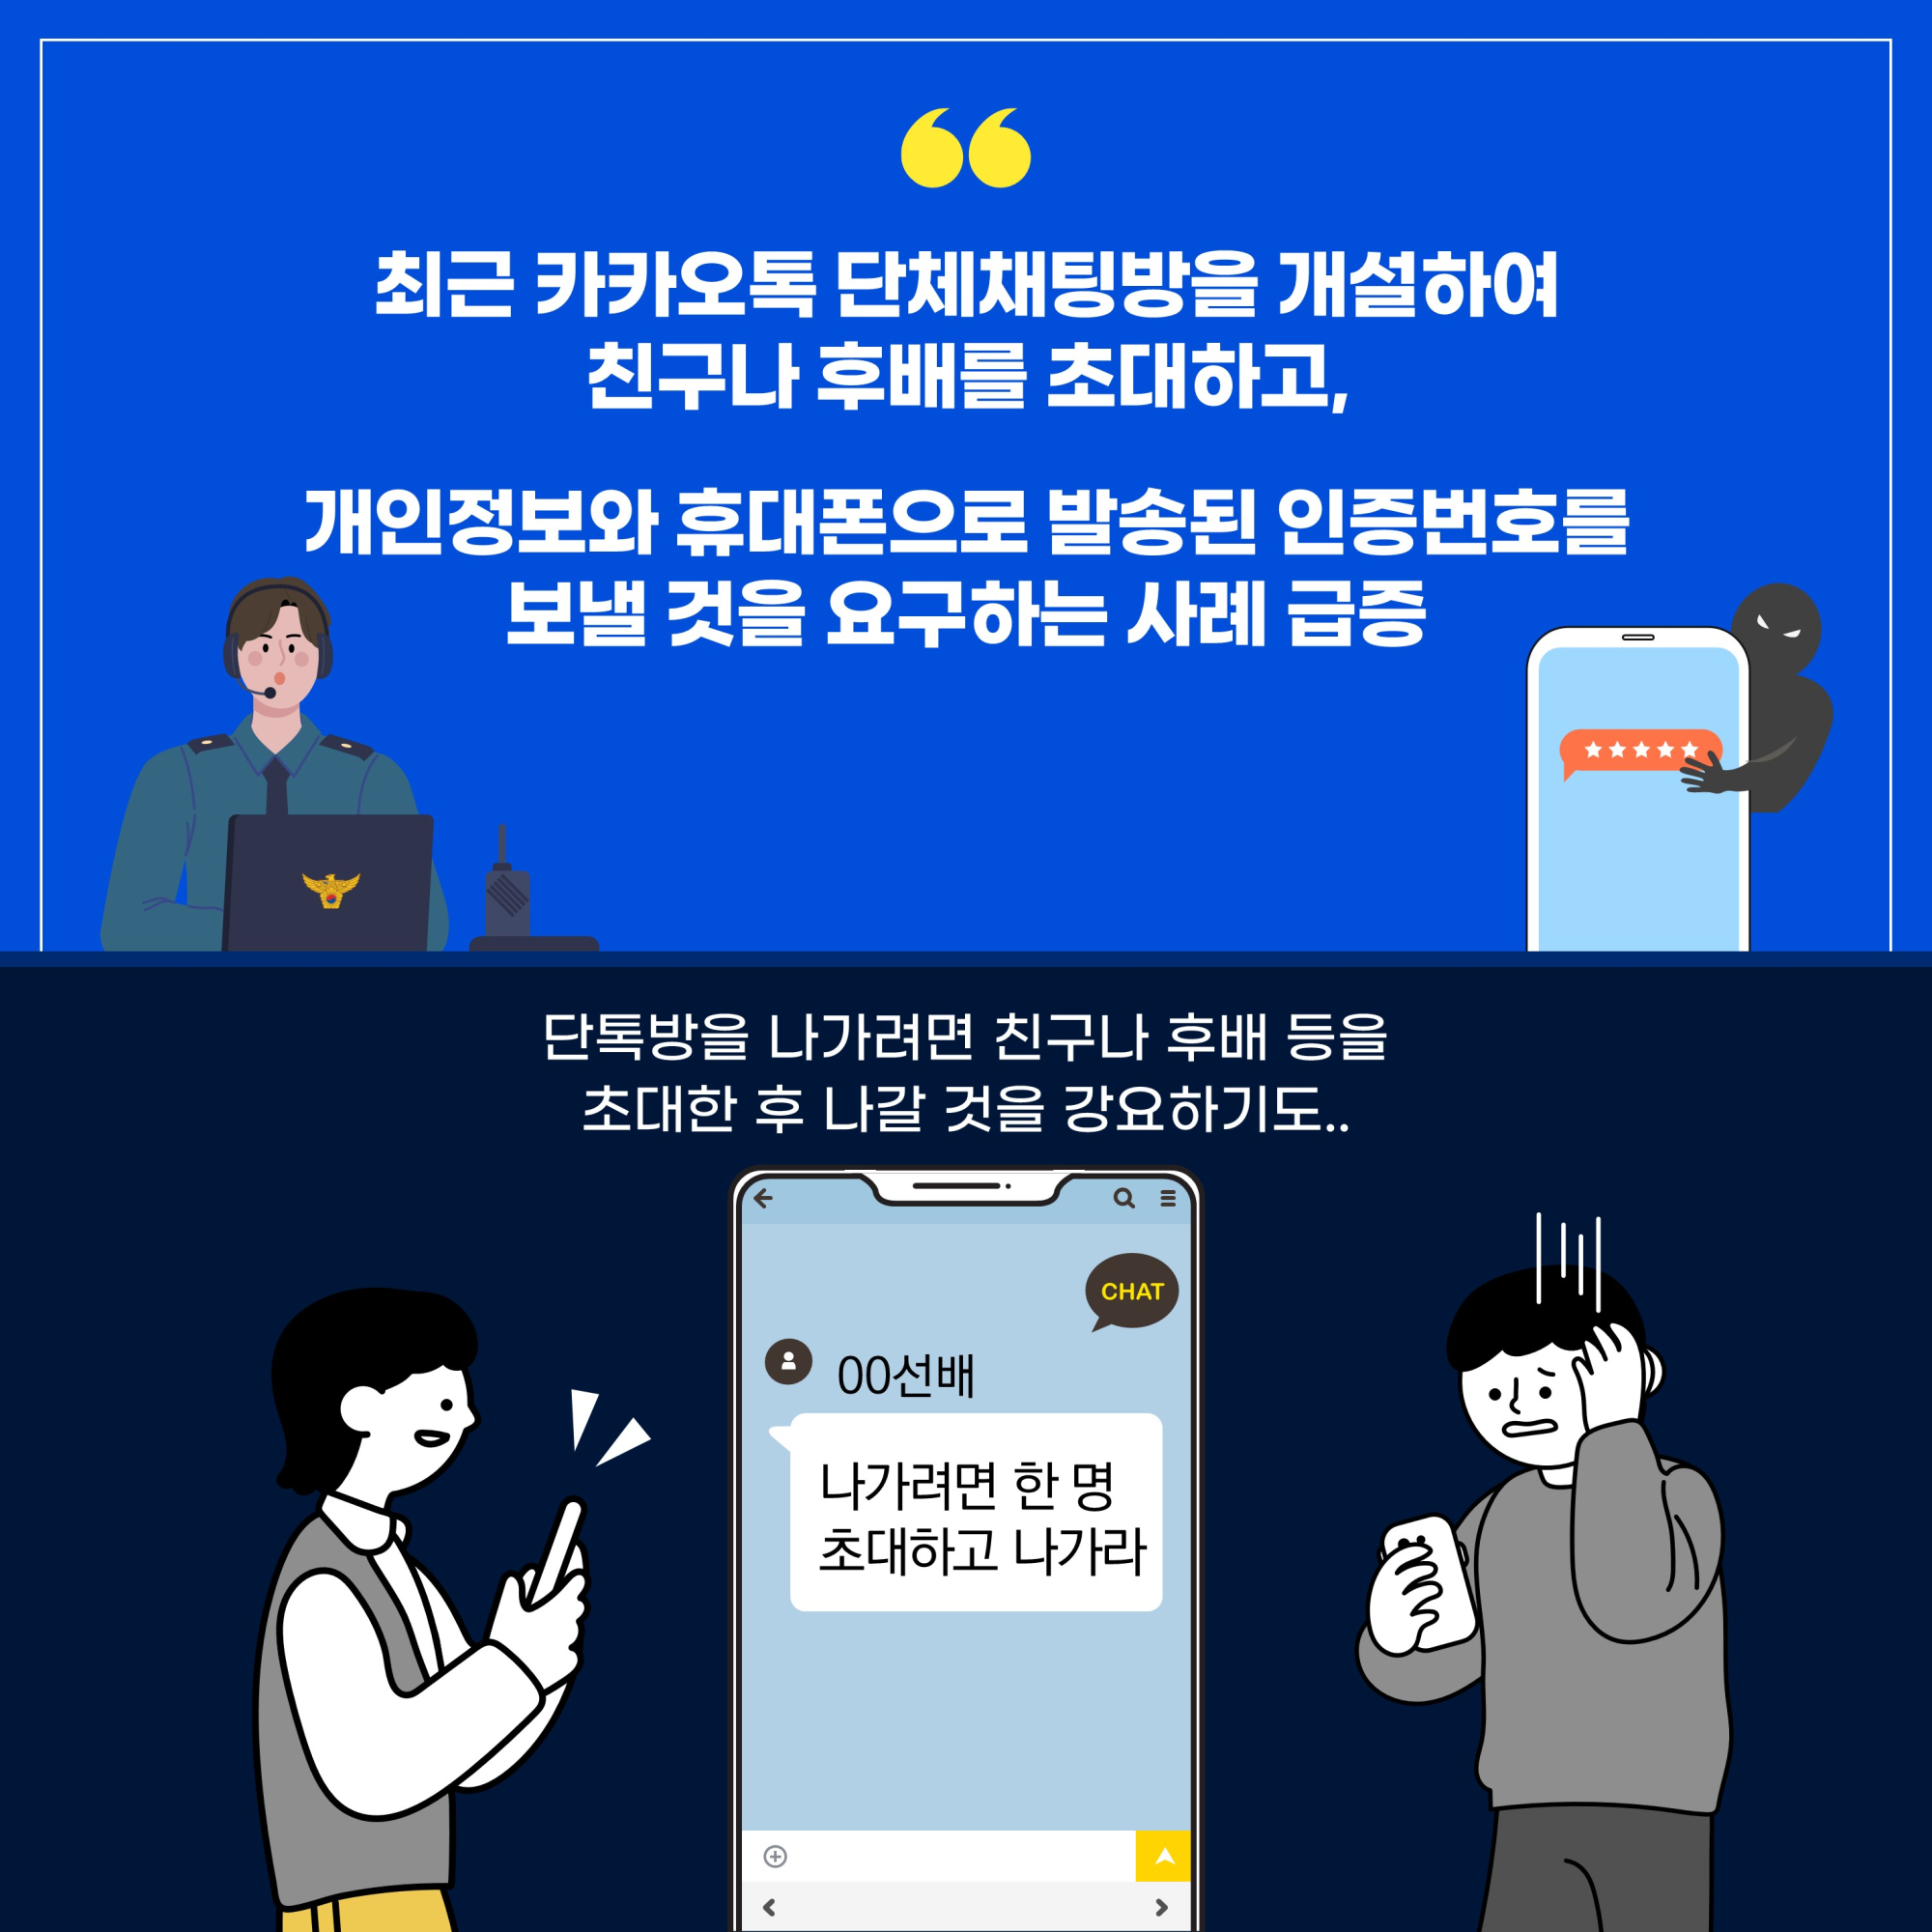 신종유형 발생경보 카드뉴스 수정 (2)